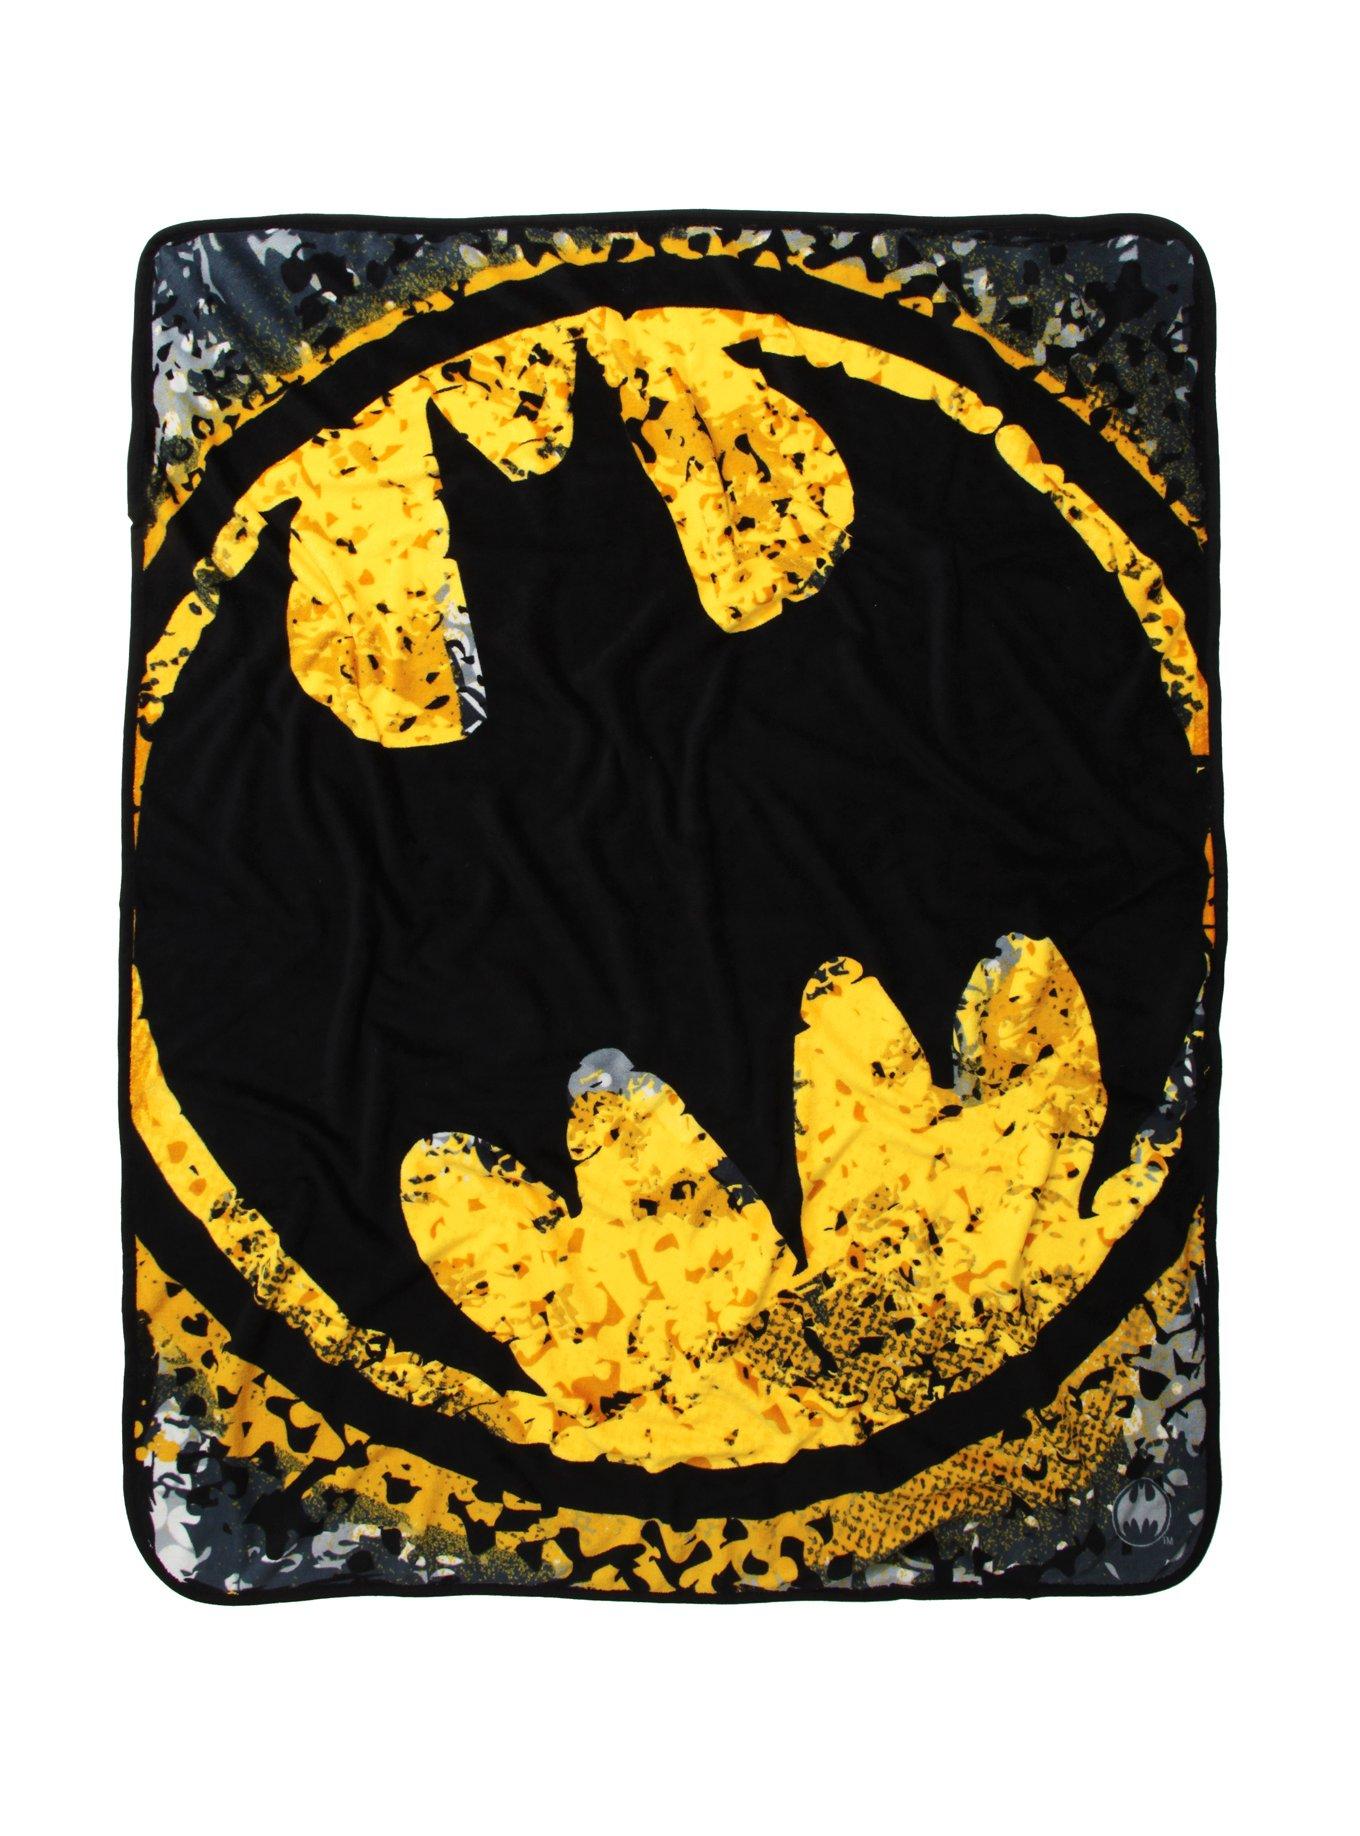 DC Comics Batman Bat Signal Throw Blanket, , hi-res